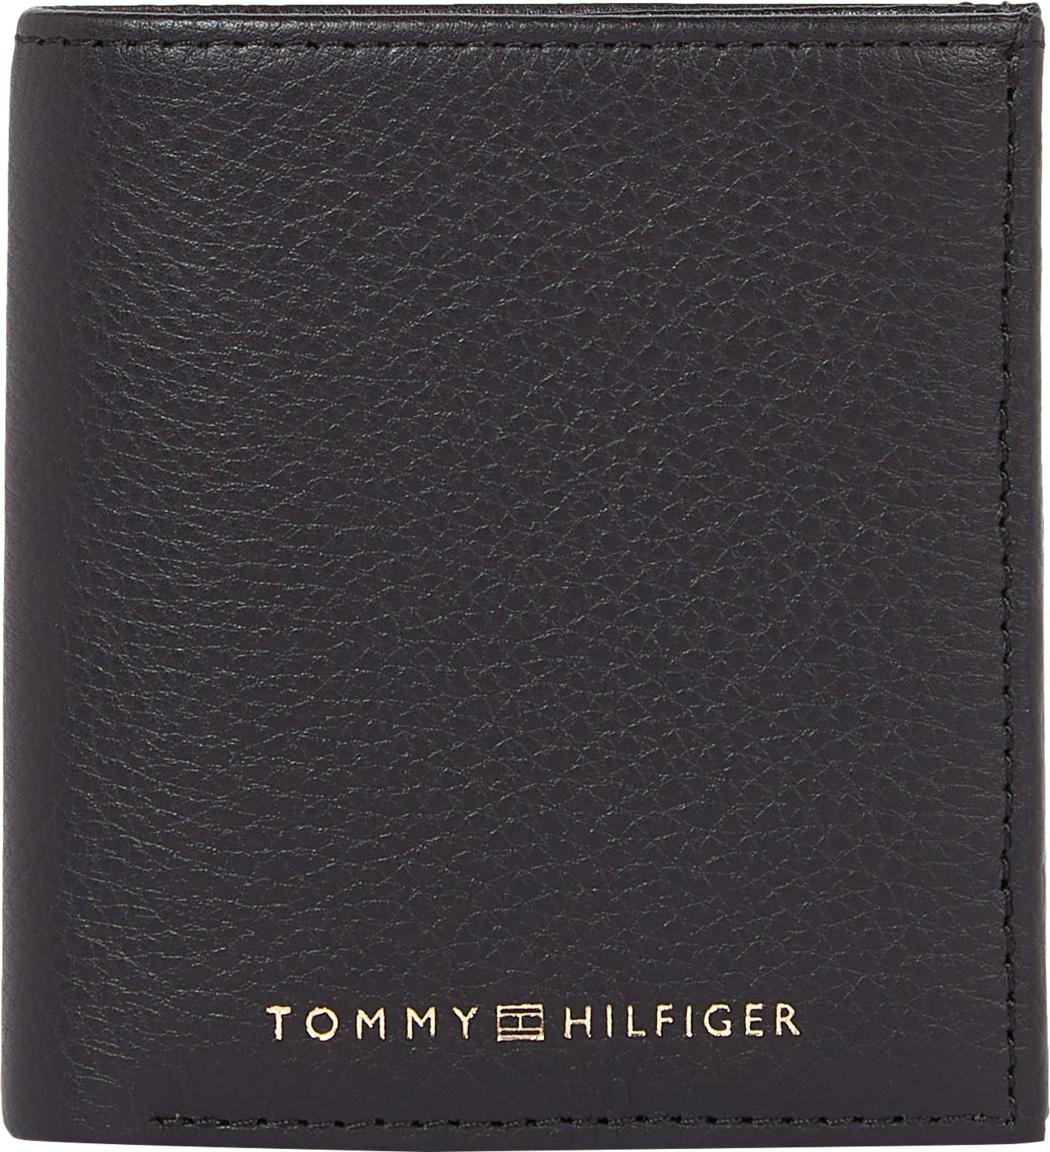 Börse Tommy Hilfiger Männer Premium Leather Trifold Schwarz